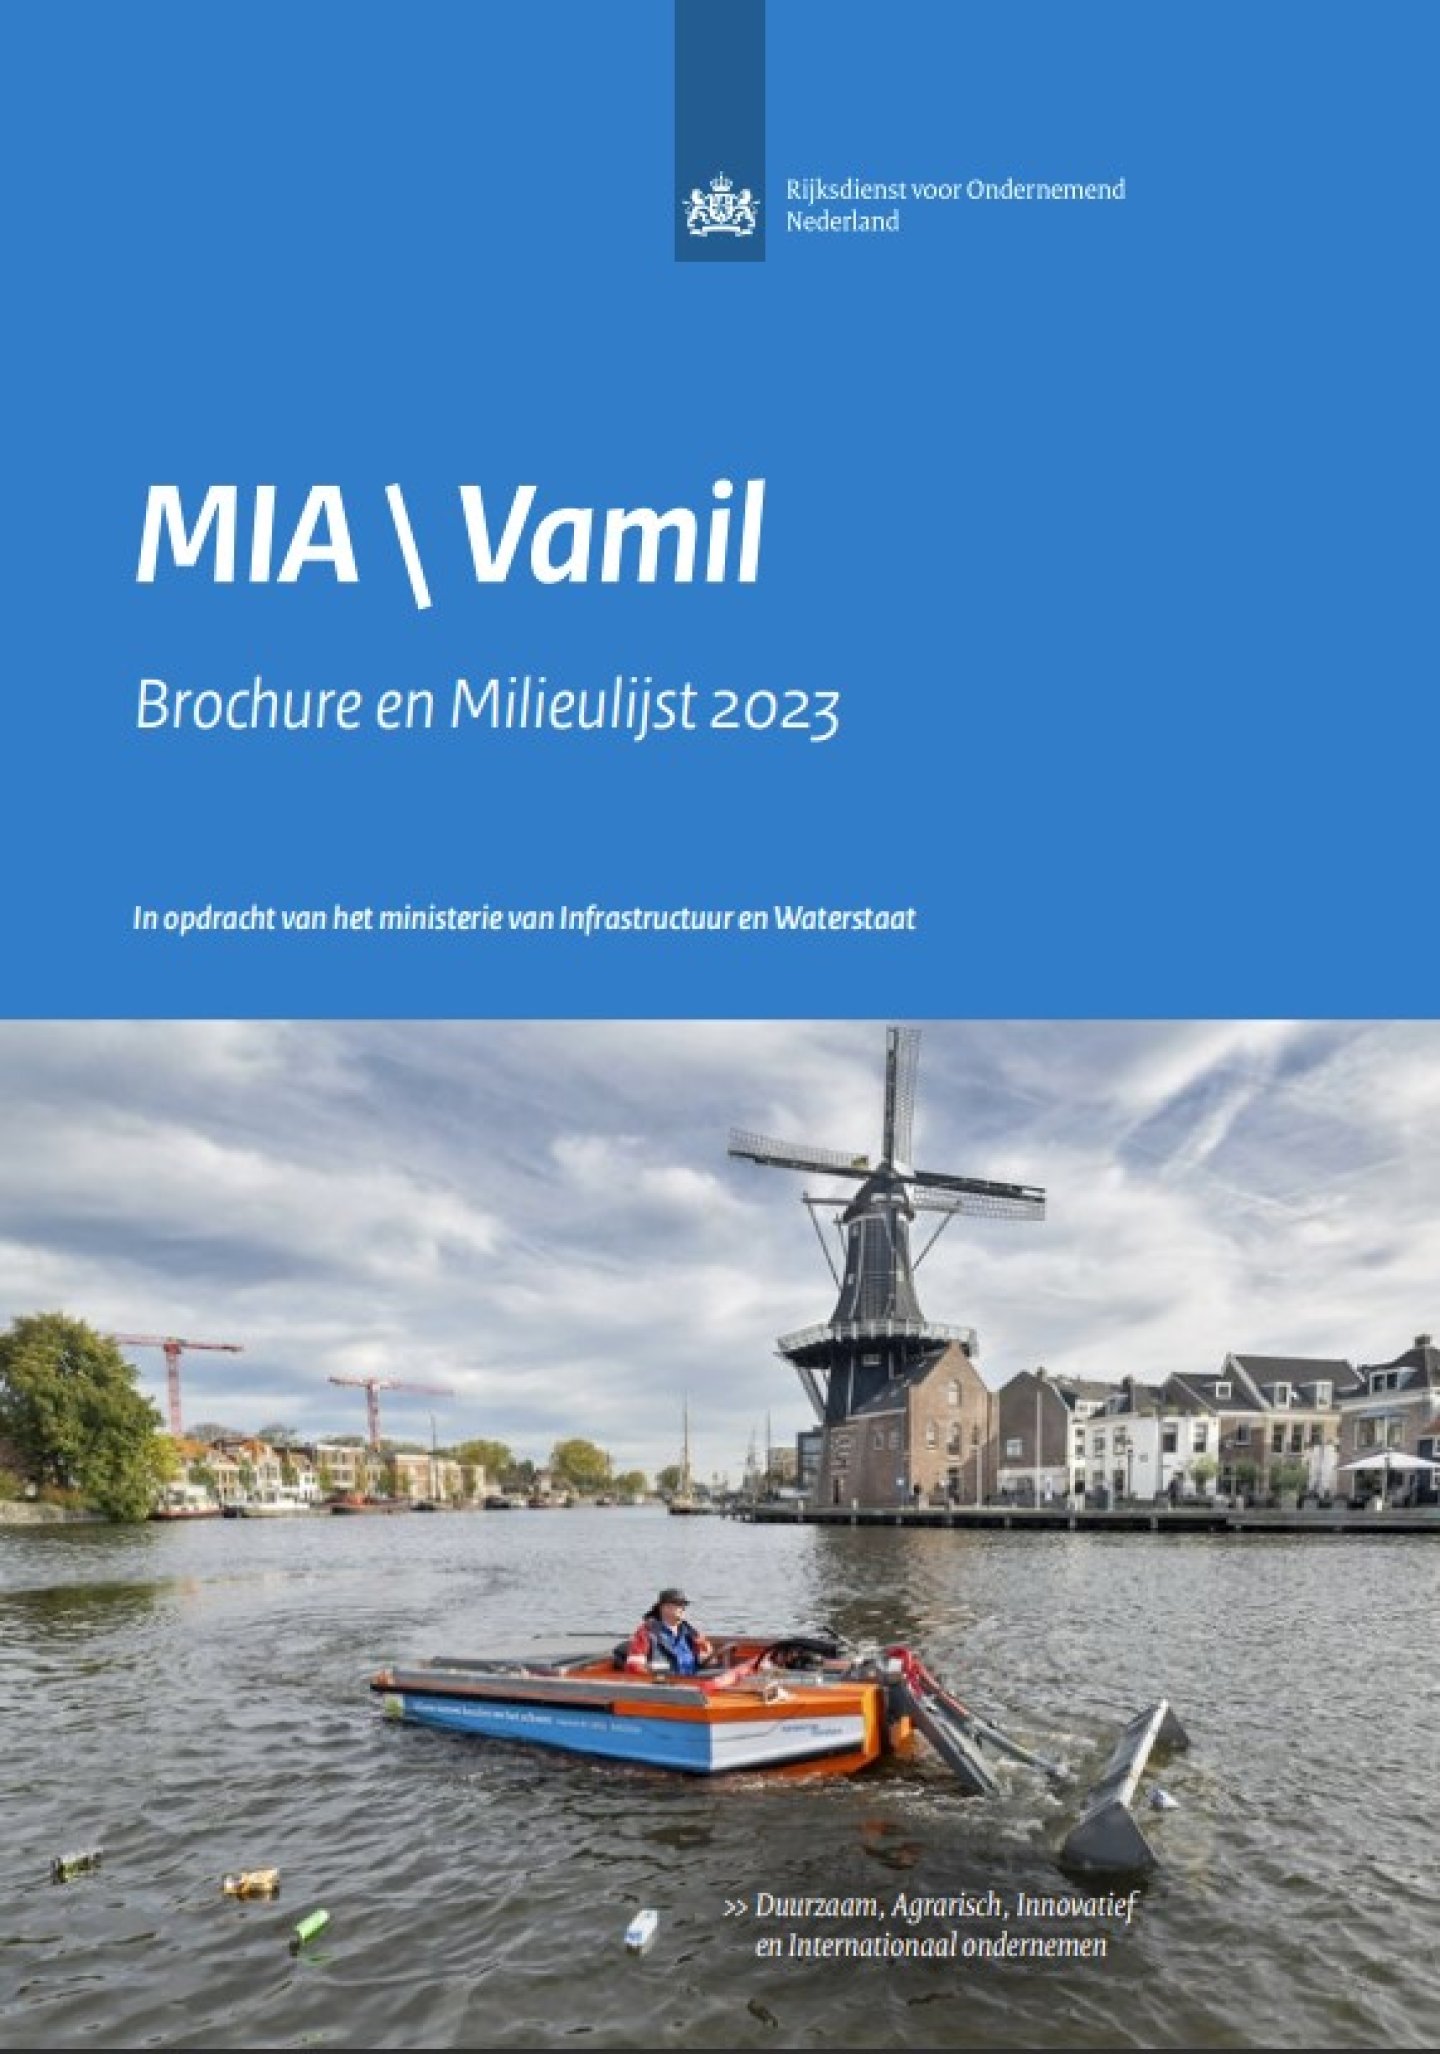 Aanmelden ‘duurzame bedrijfsmiddelen’ voor MIA\Vamil subsidie in 2024